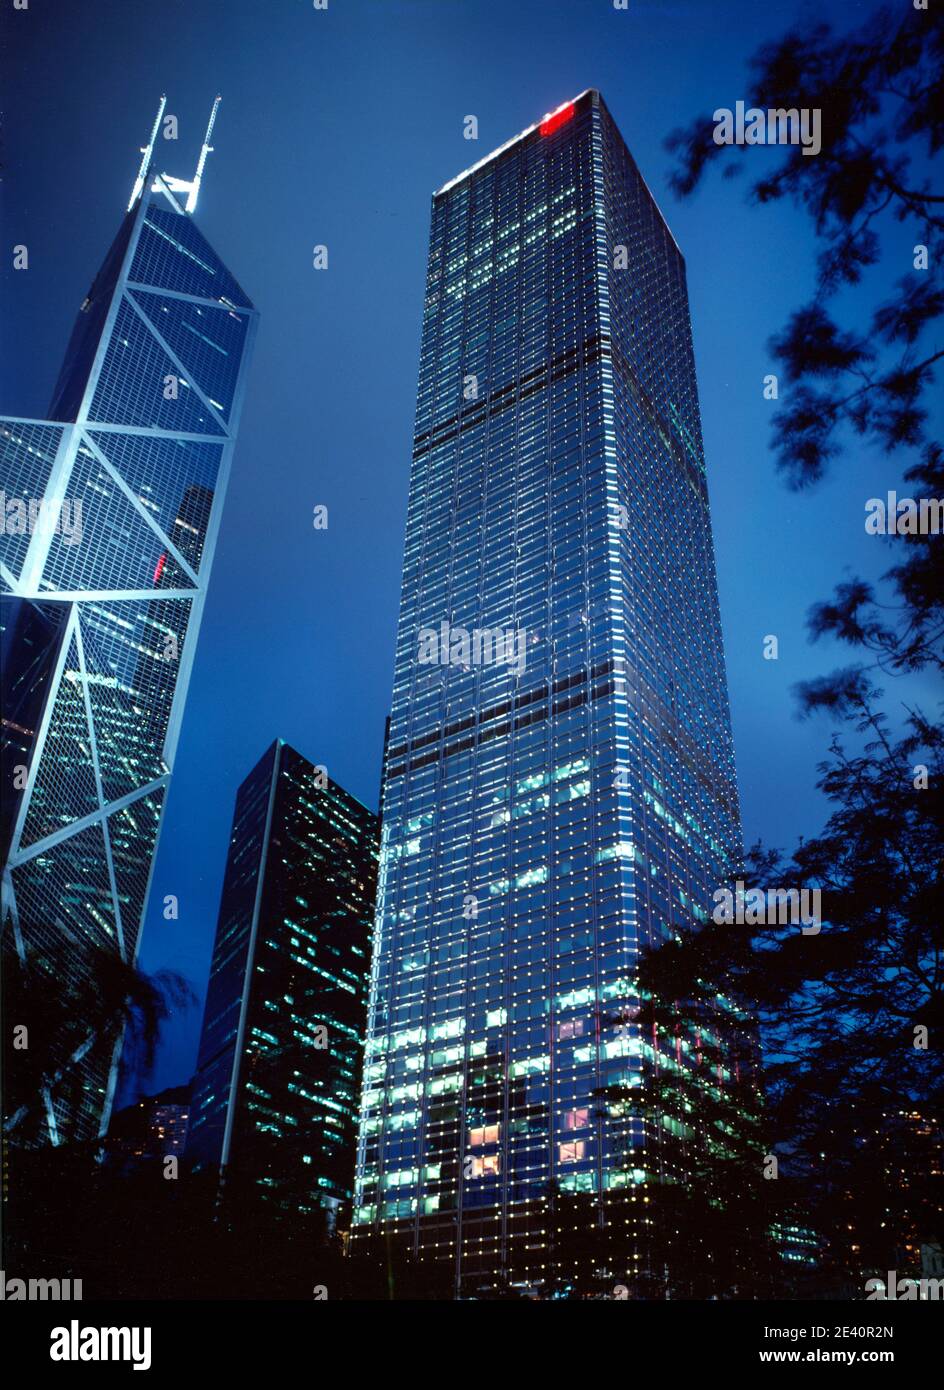 Cheung Kong Centre, Bank of China, Pei, Hsin Yieh architects, Cesar Pelli, Hong Kong China Stock Photo